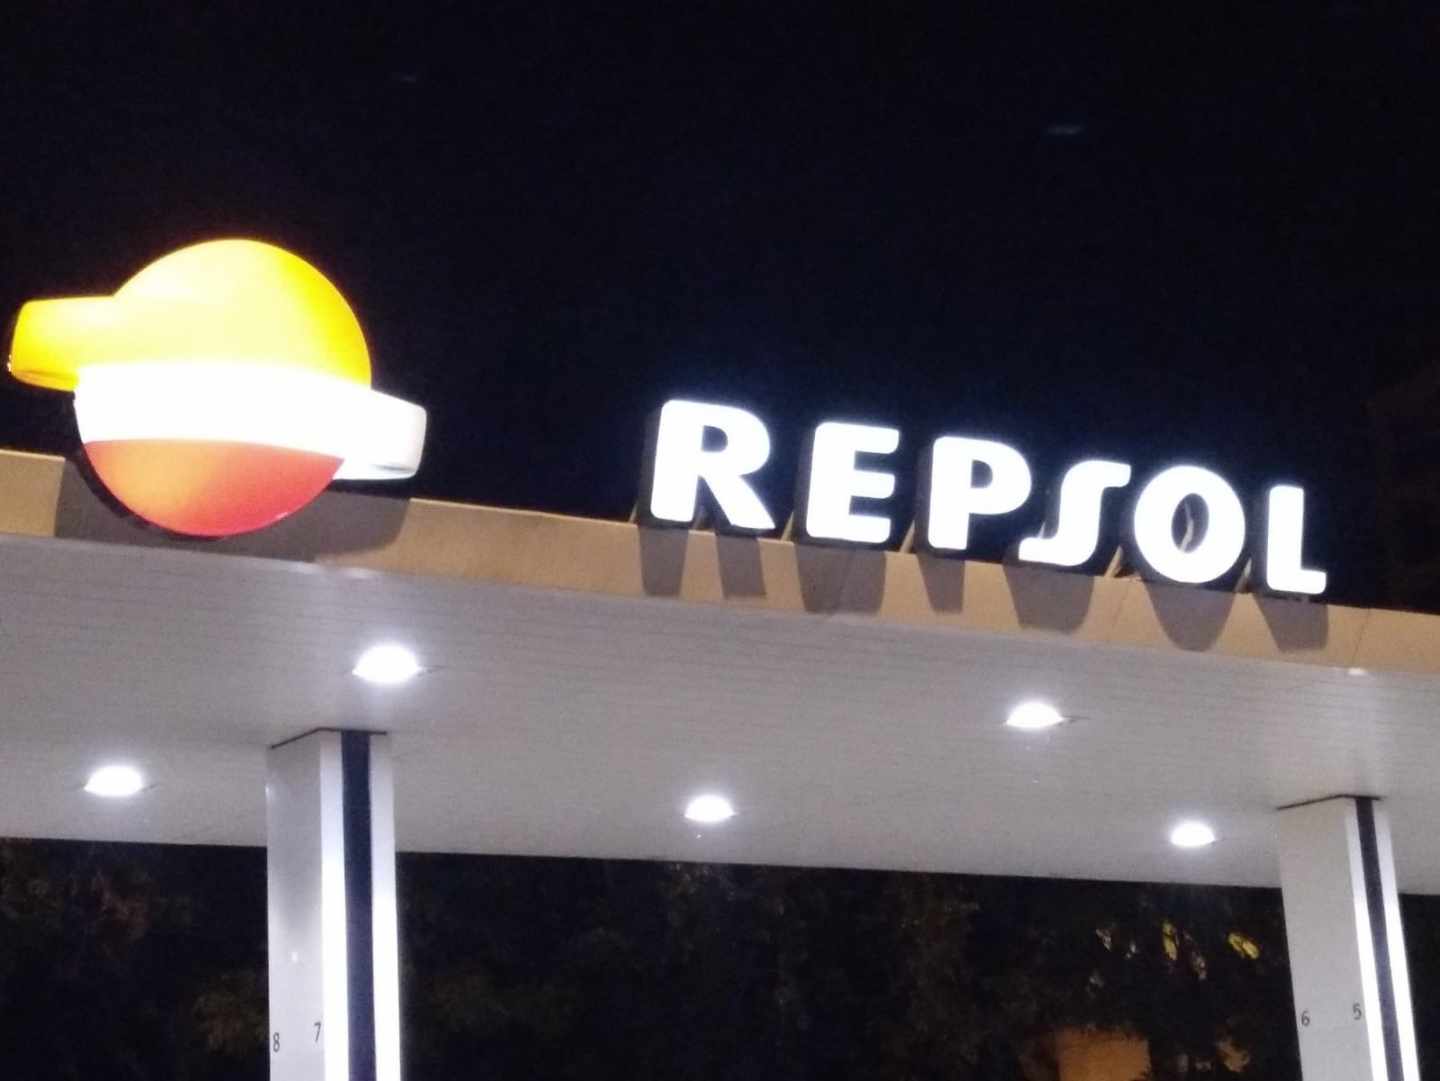 Una gasolinera de Repsol